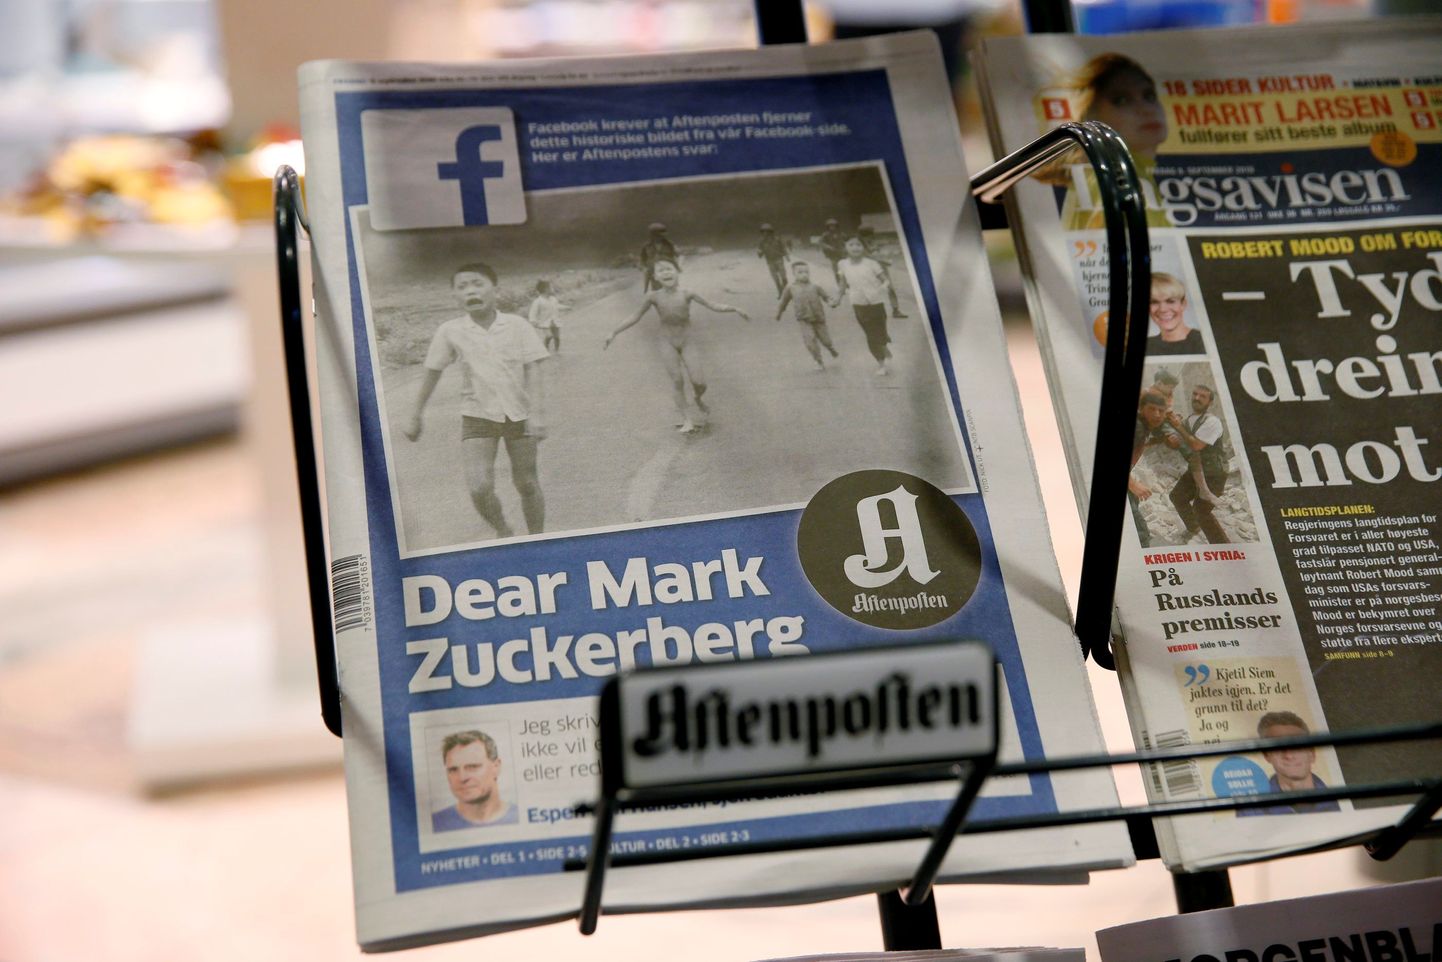 Газета Афтенпостен обратилась в пятницу к основателю Facebook Марку Цукербергу.